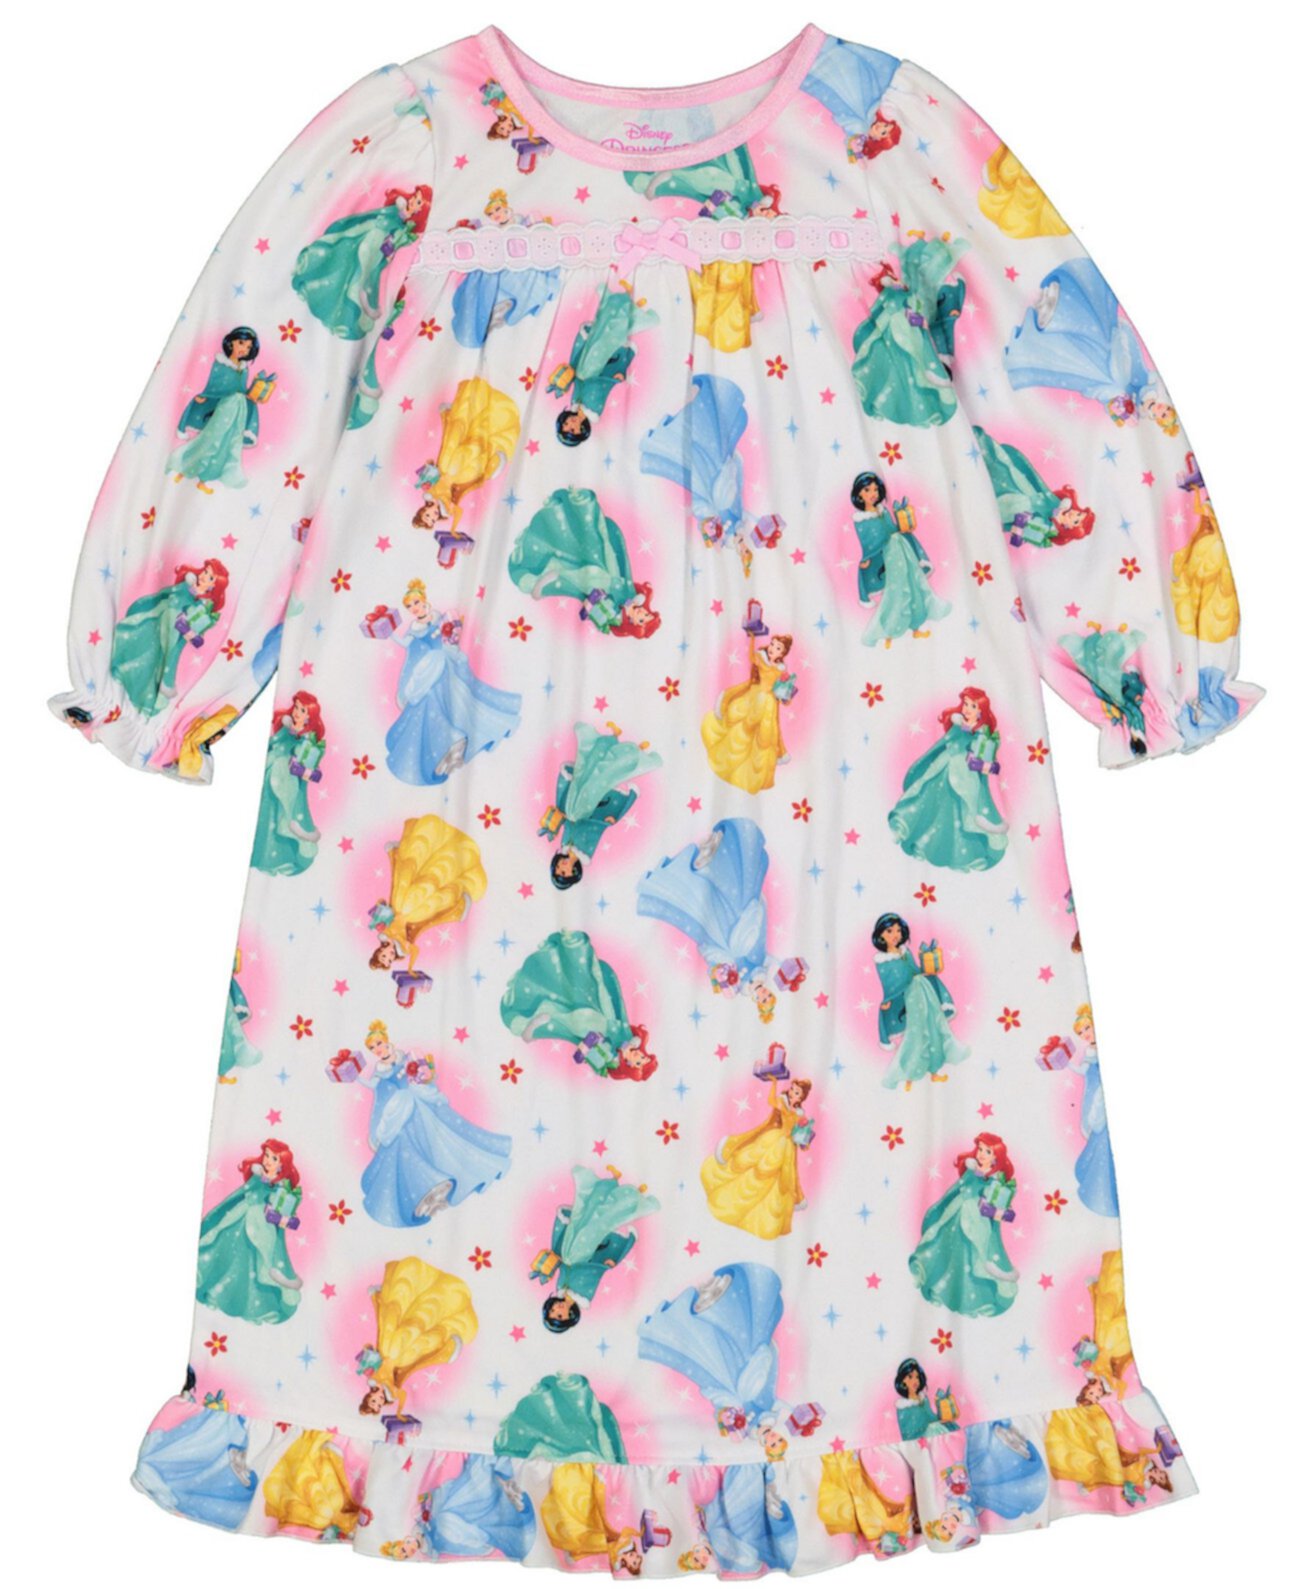 Ночная рубашка для маленьких девочек и бабушек принцесс Диснея AME